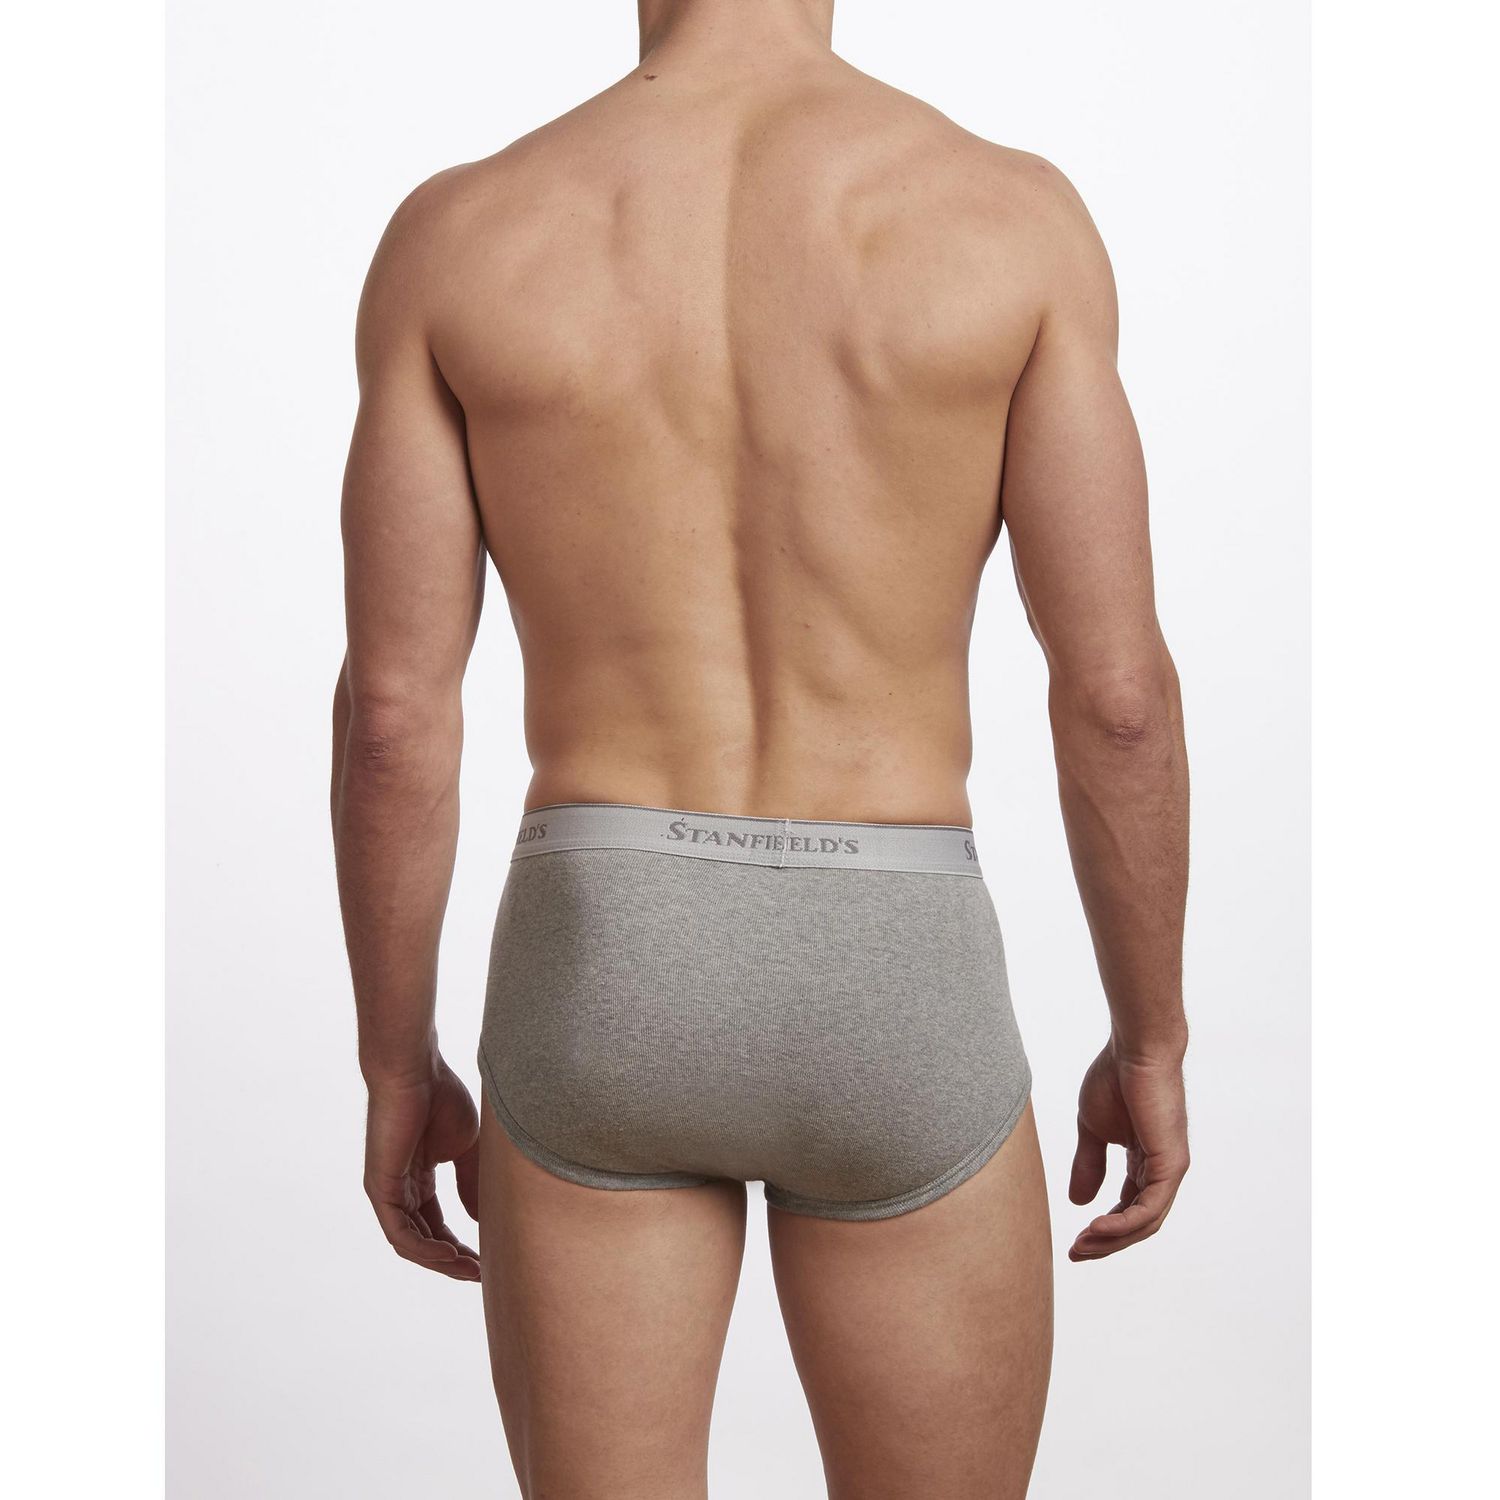 Stanfield's Men's Premium 100% Cotton Brief Underwear - 3 Pack